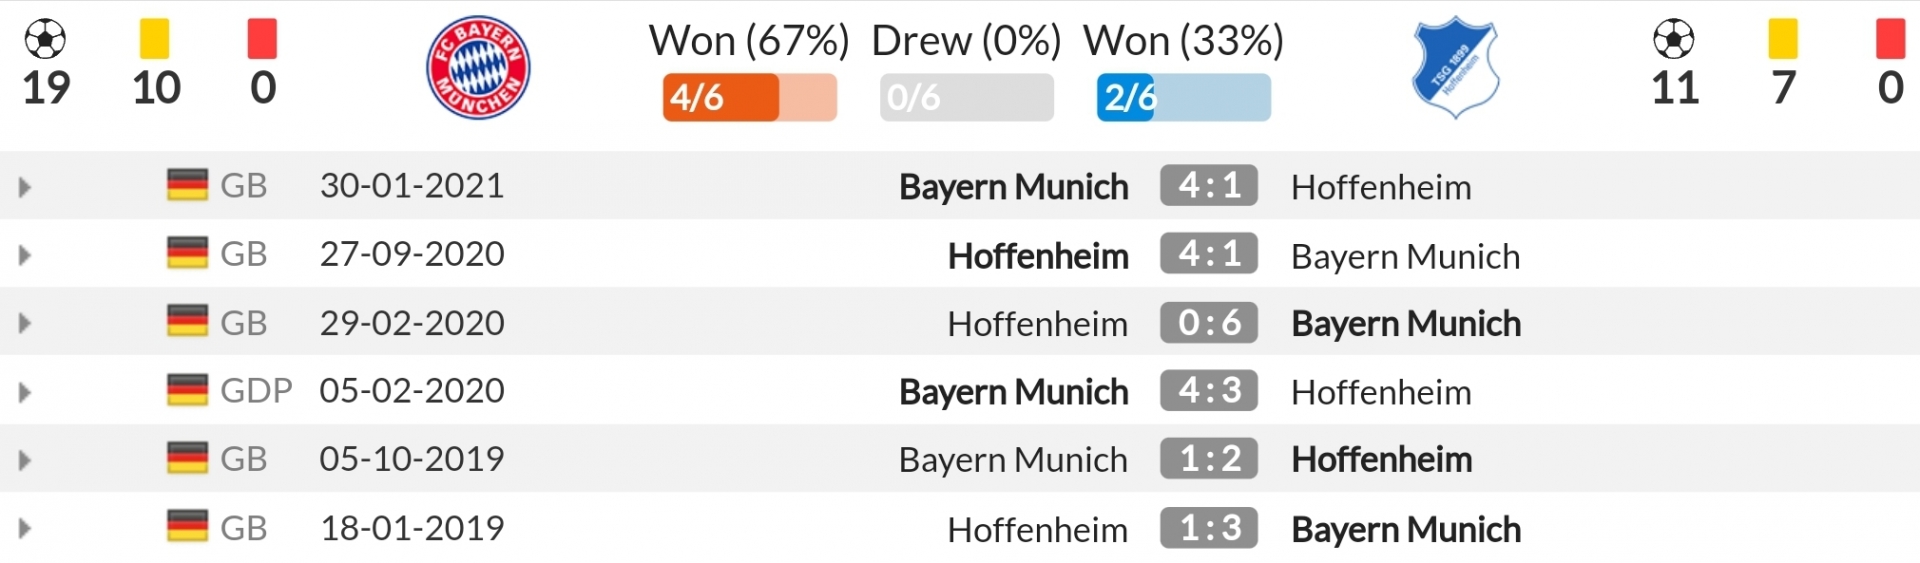 Nhận định Bayern Munich vs Hoffenheim (20h30, 23/10) vòng 9 Bundesliga: Thời cơ tăng tốc 4